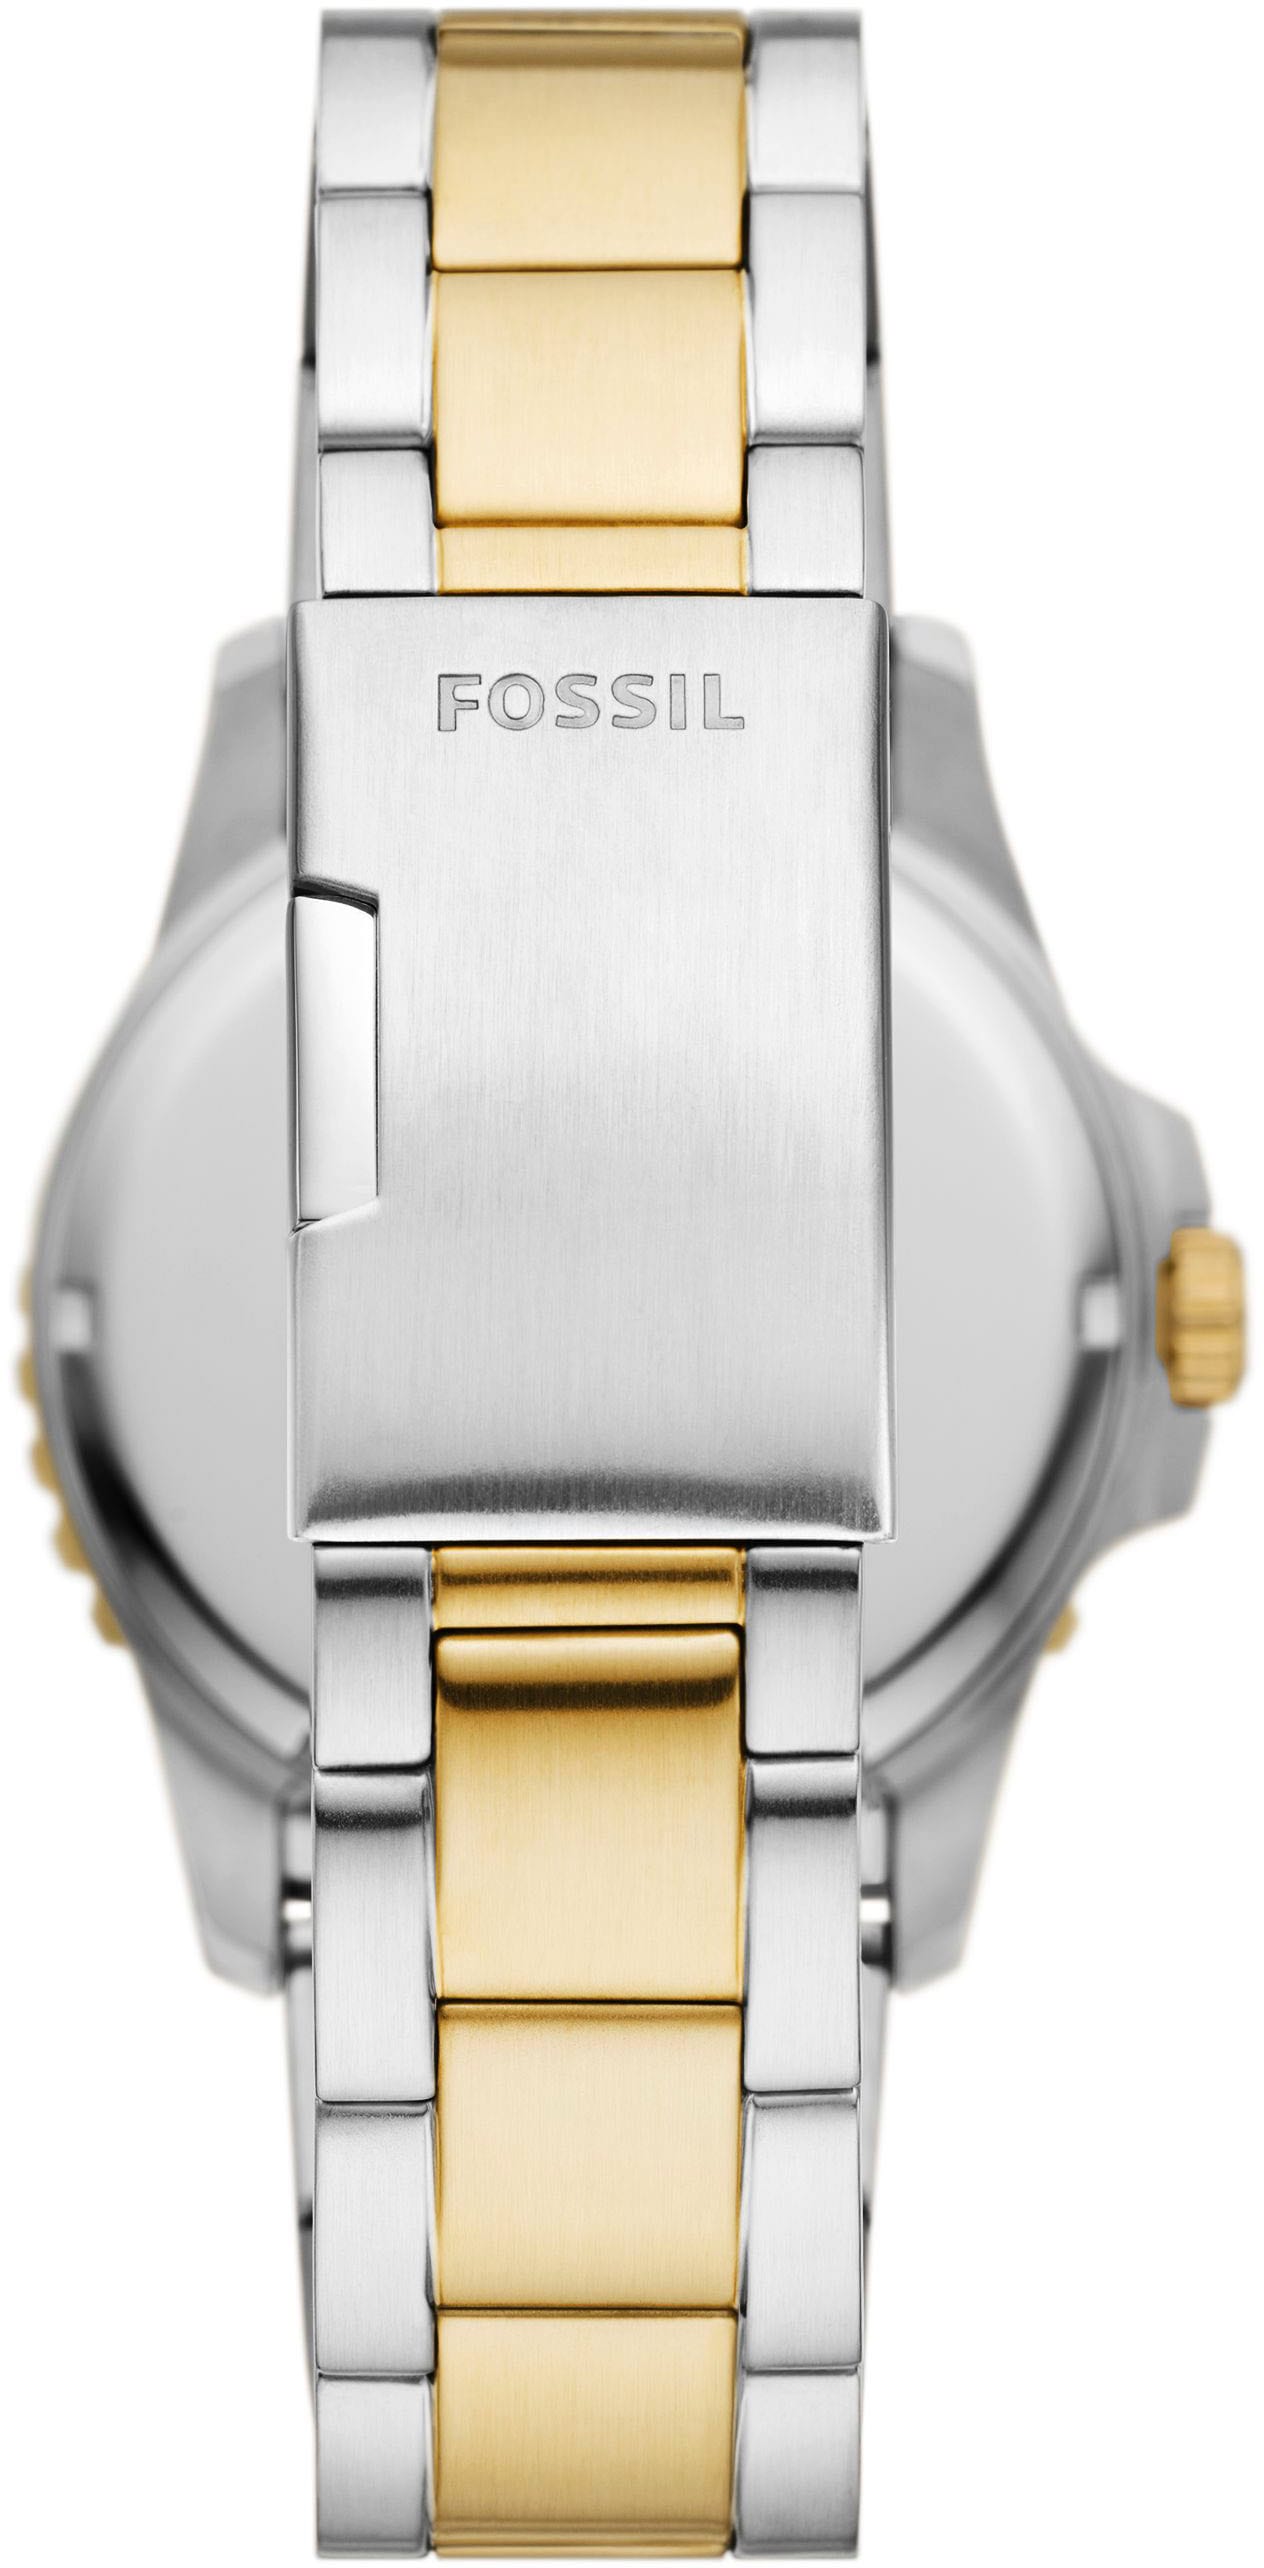 Fossil Quarzuhr »FOSSIL BLUE DIVE, FS6031«, Armbanduhr, Herrenuhr, Datum, analog